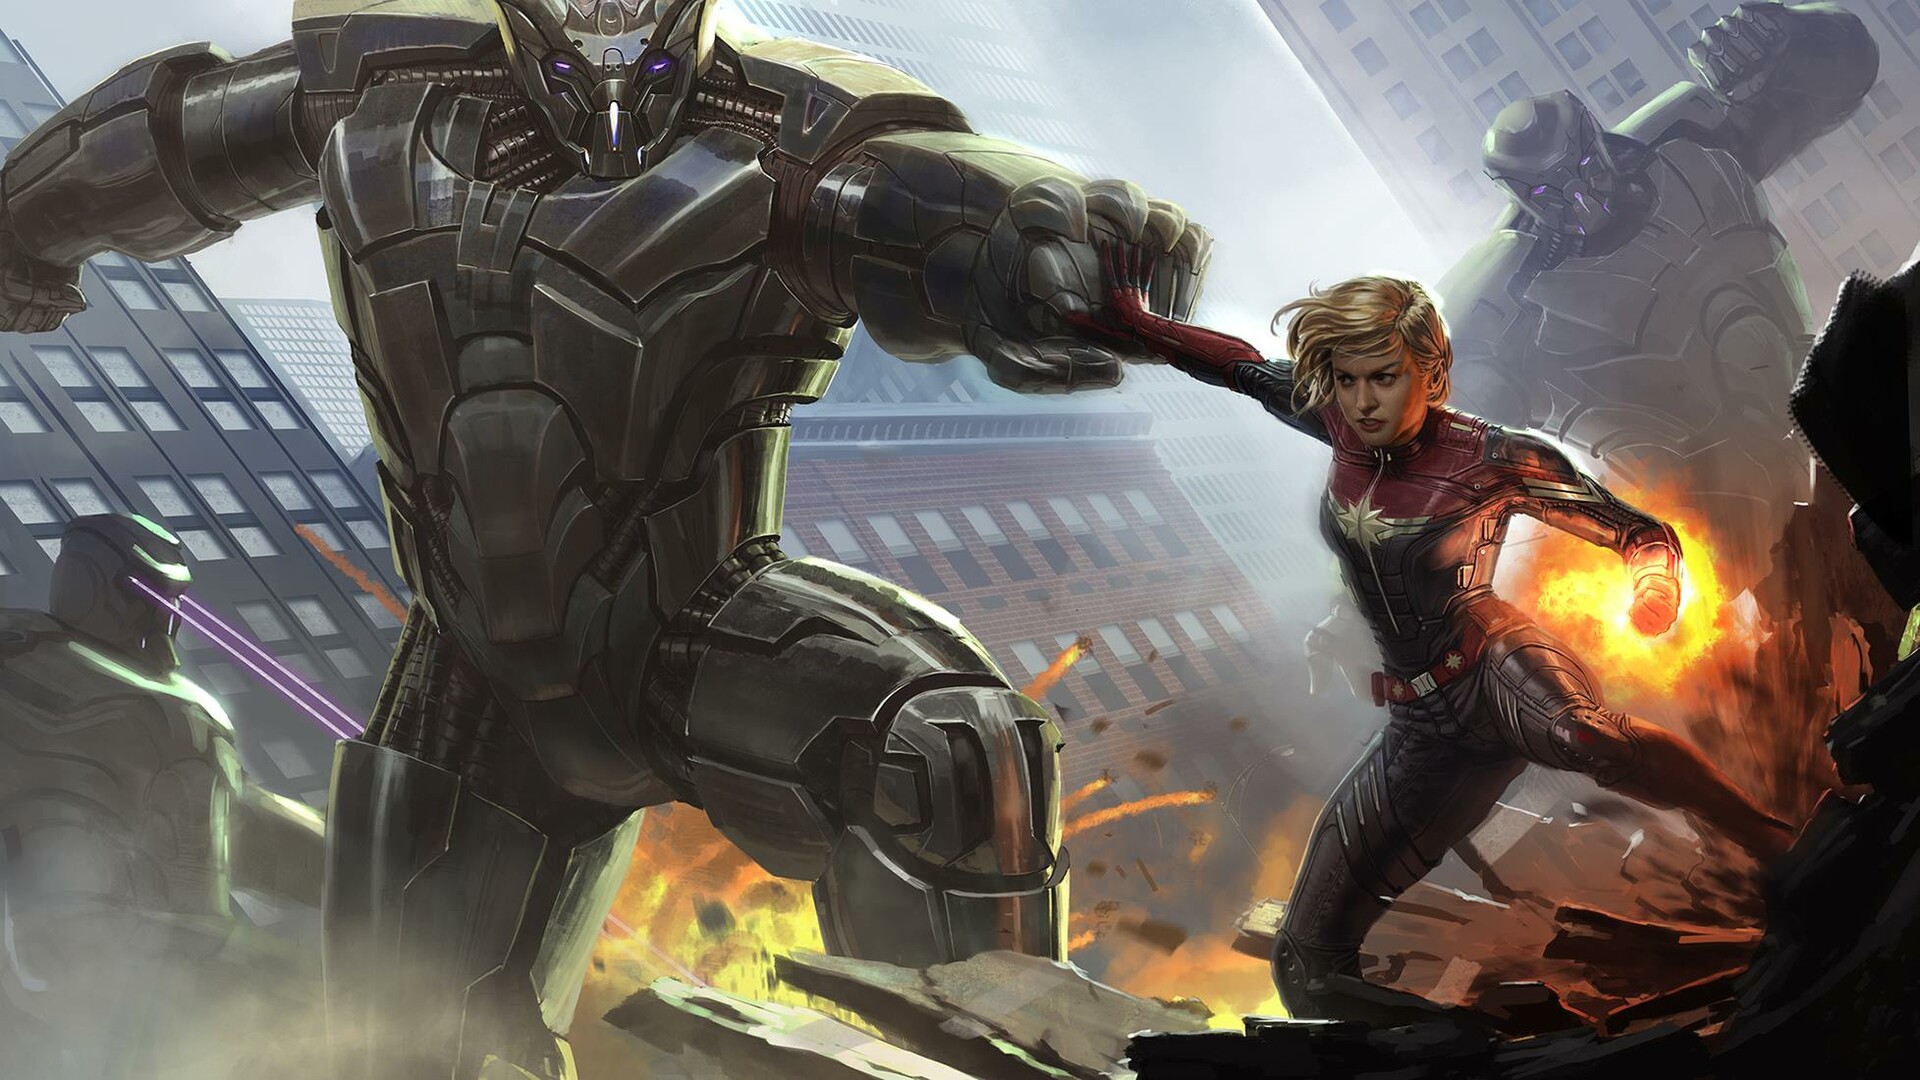 Avengers Endgame Concept Art Reveals An Amazing Look At Captain Images, Photos, Reviews